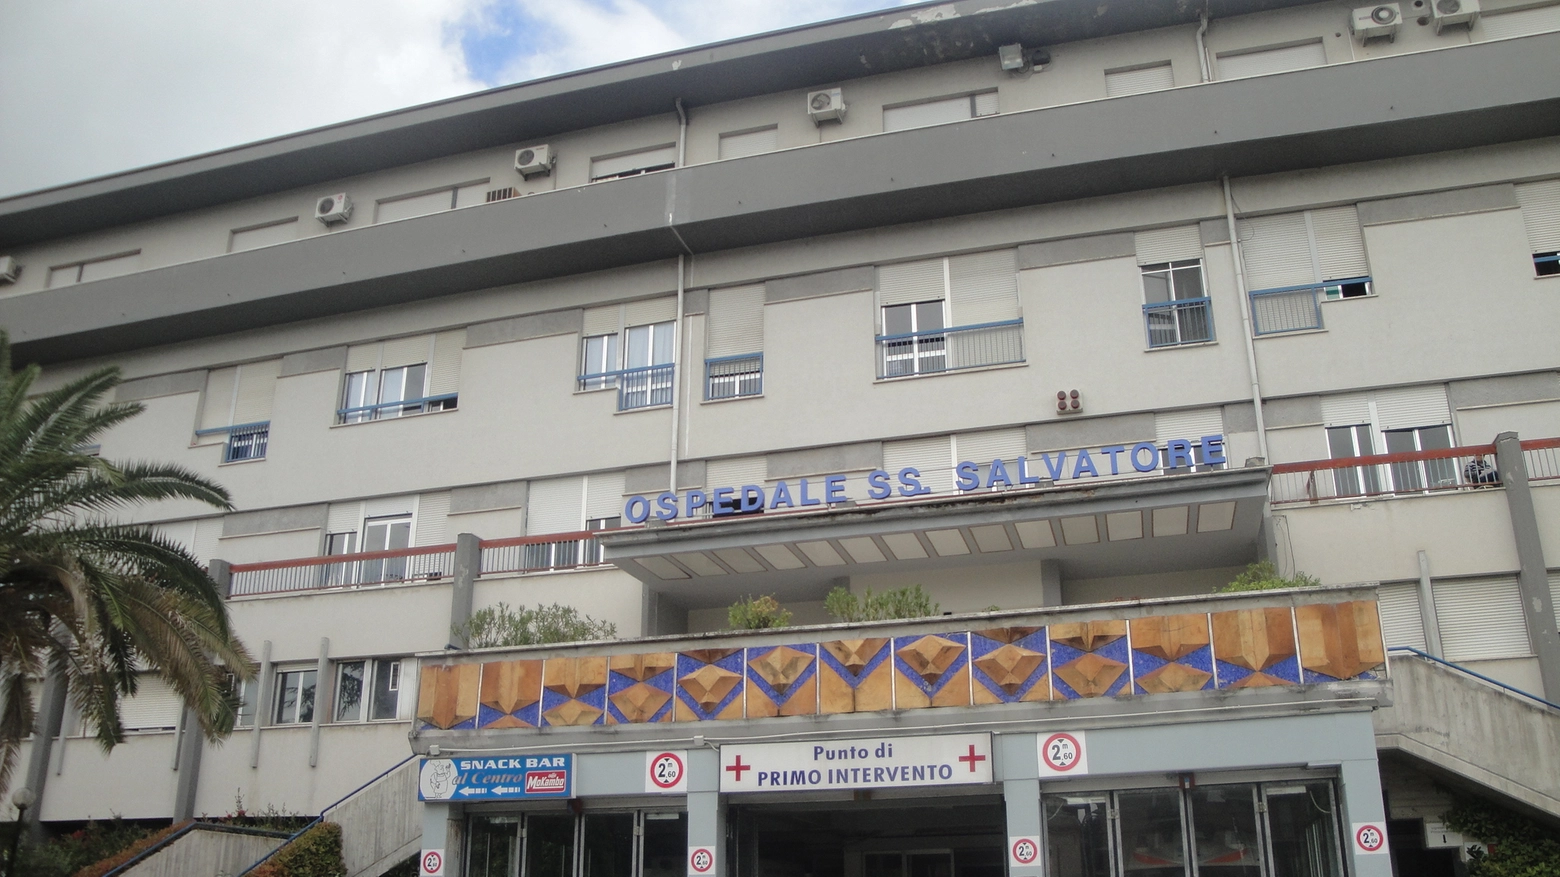 L'ospedale di Tolentino (foto Gentili)